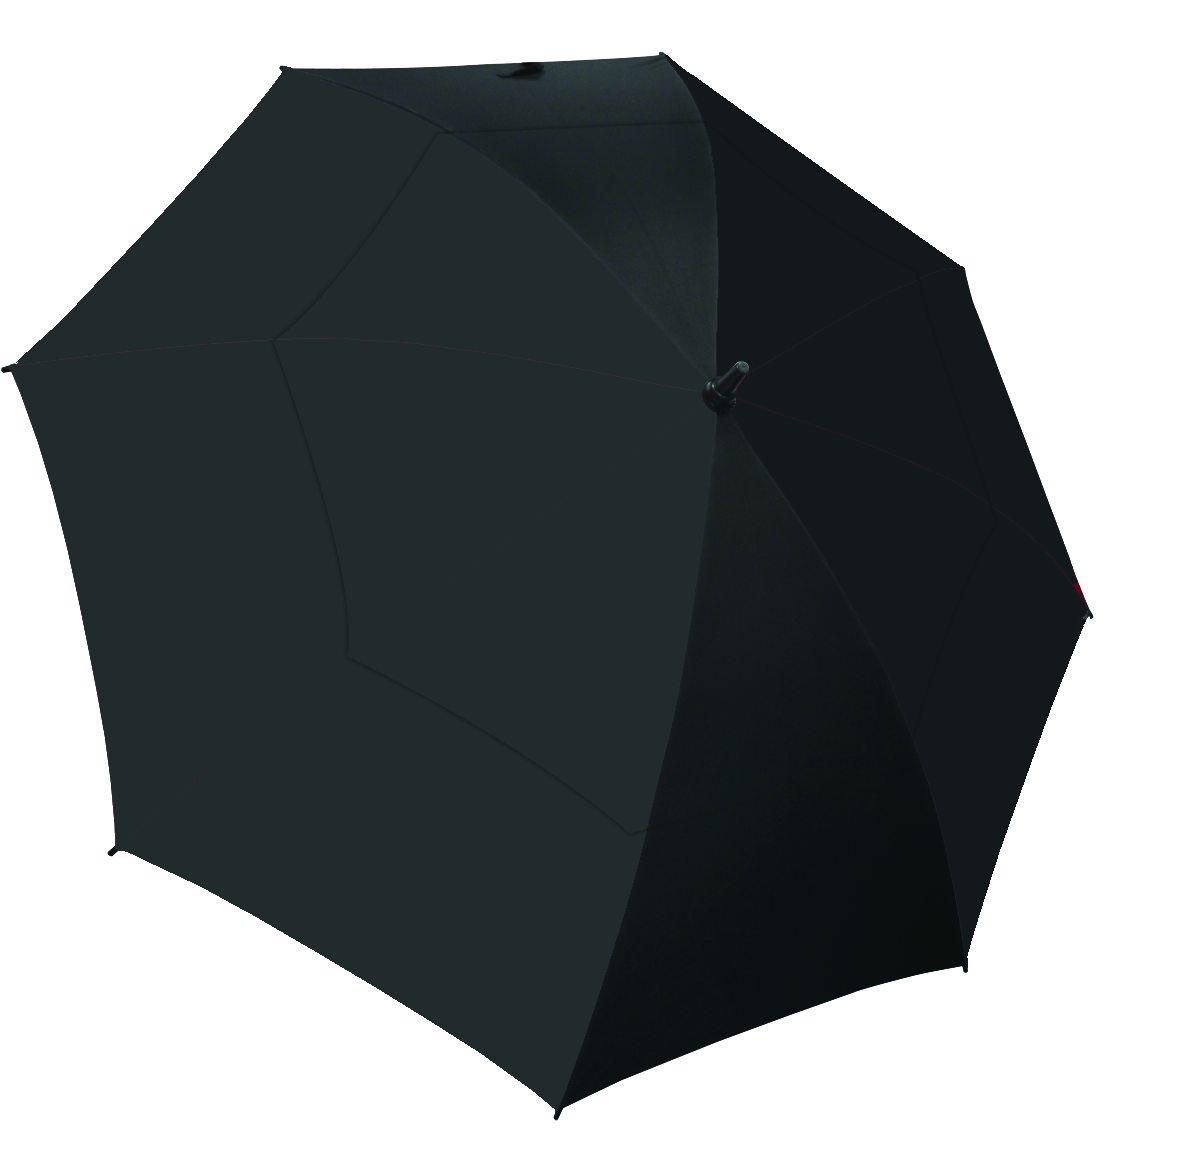 Auto Open Supervent Umbrella